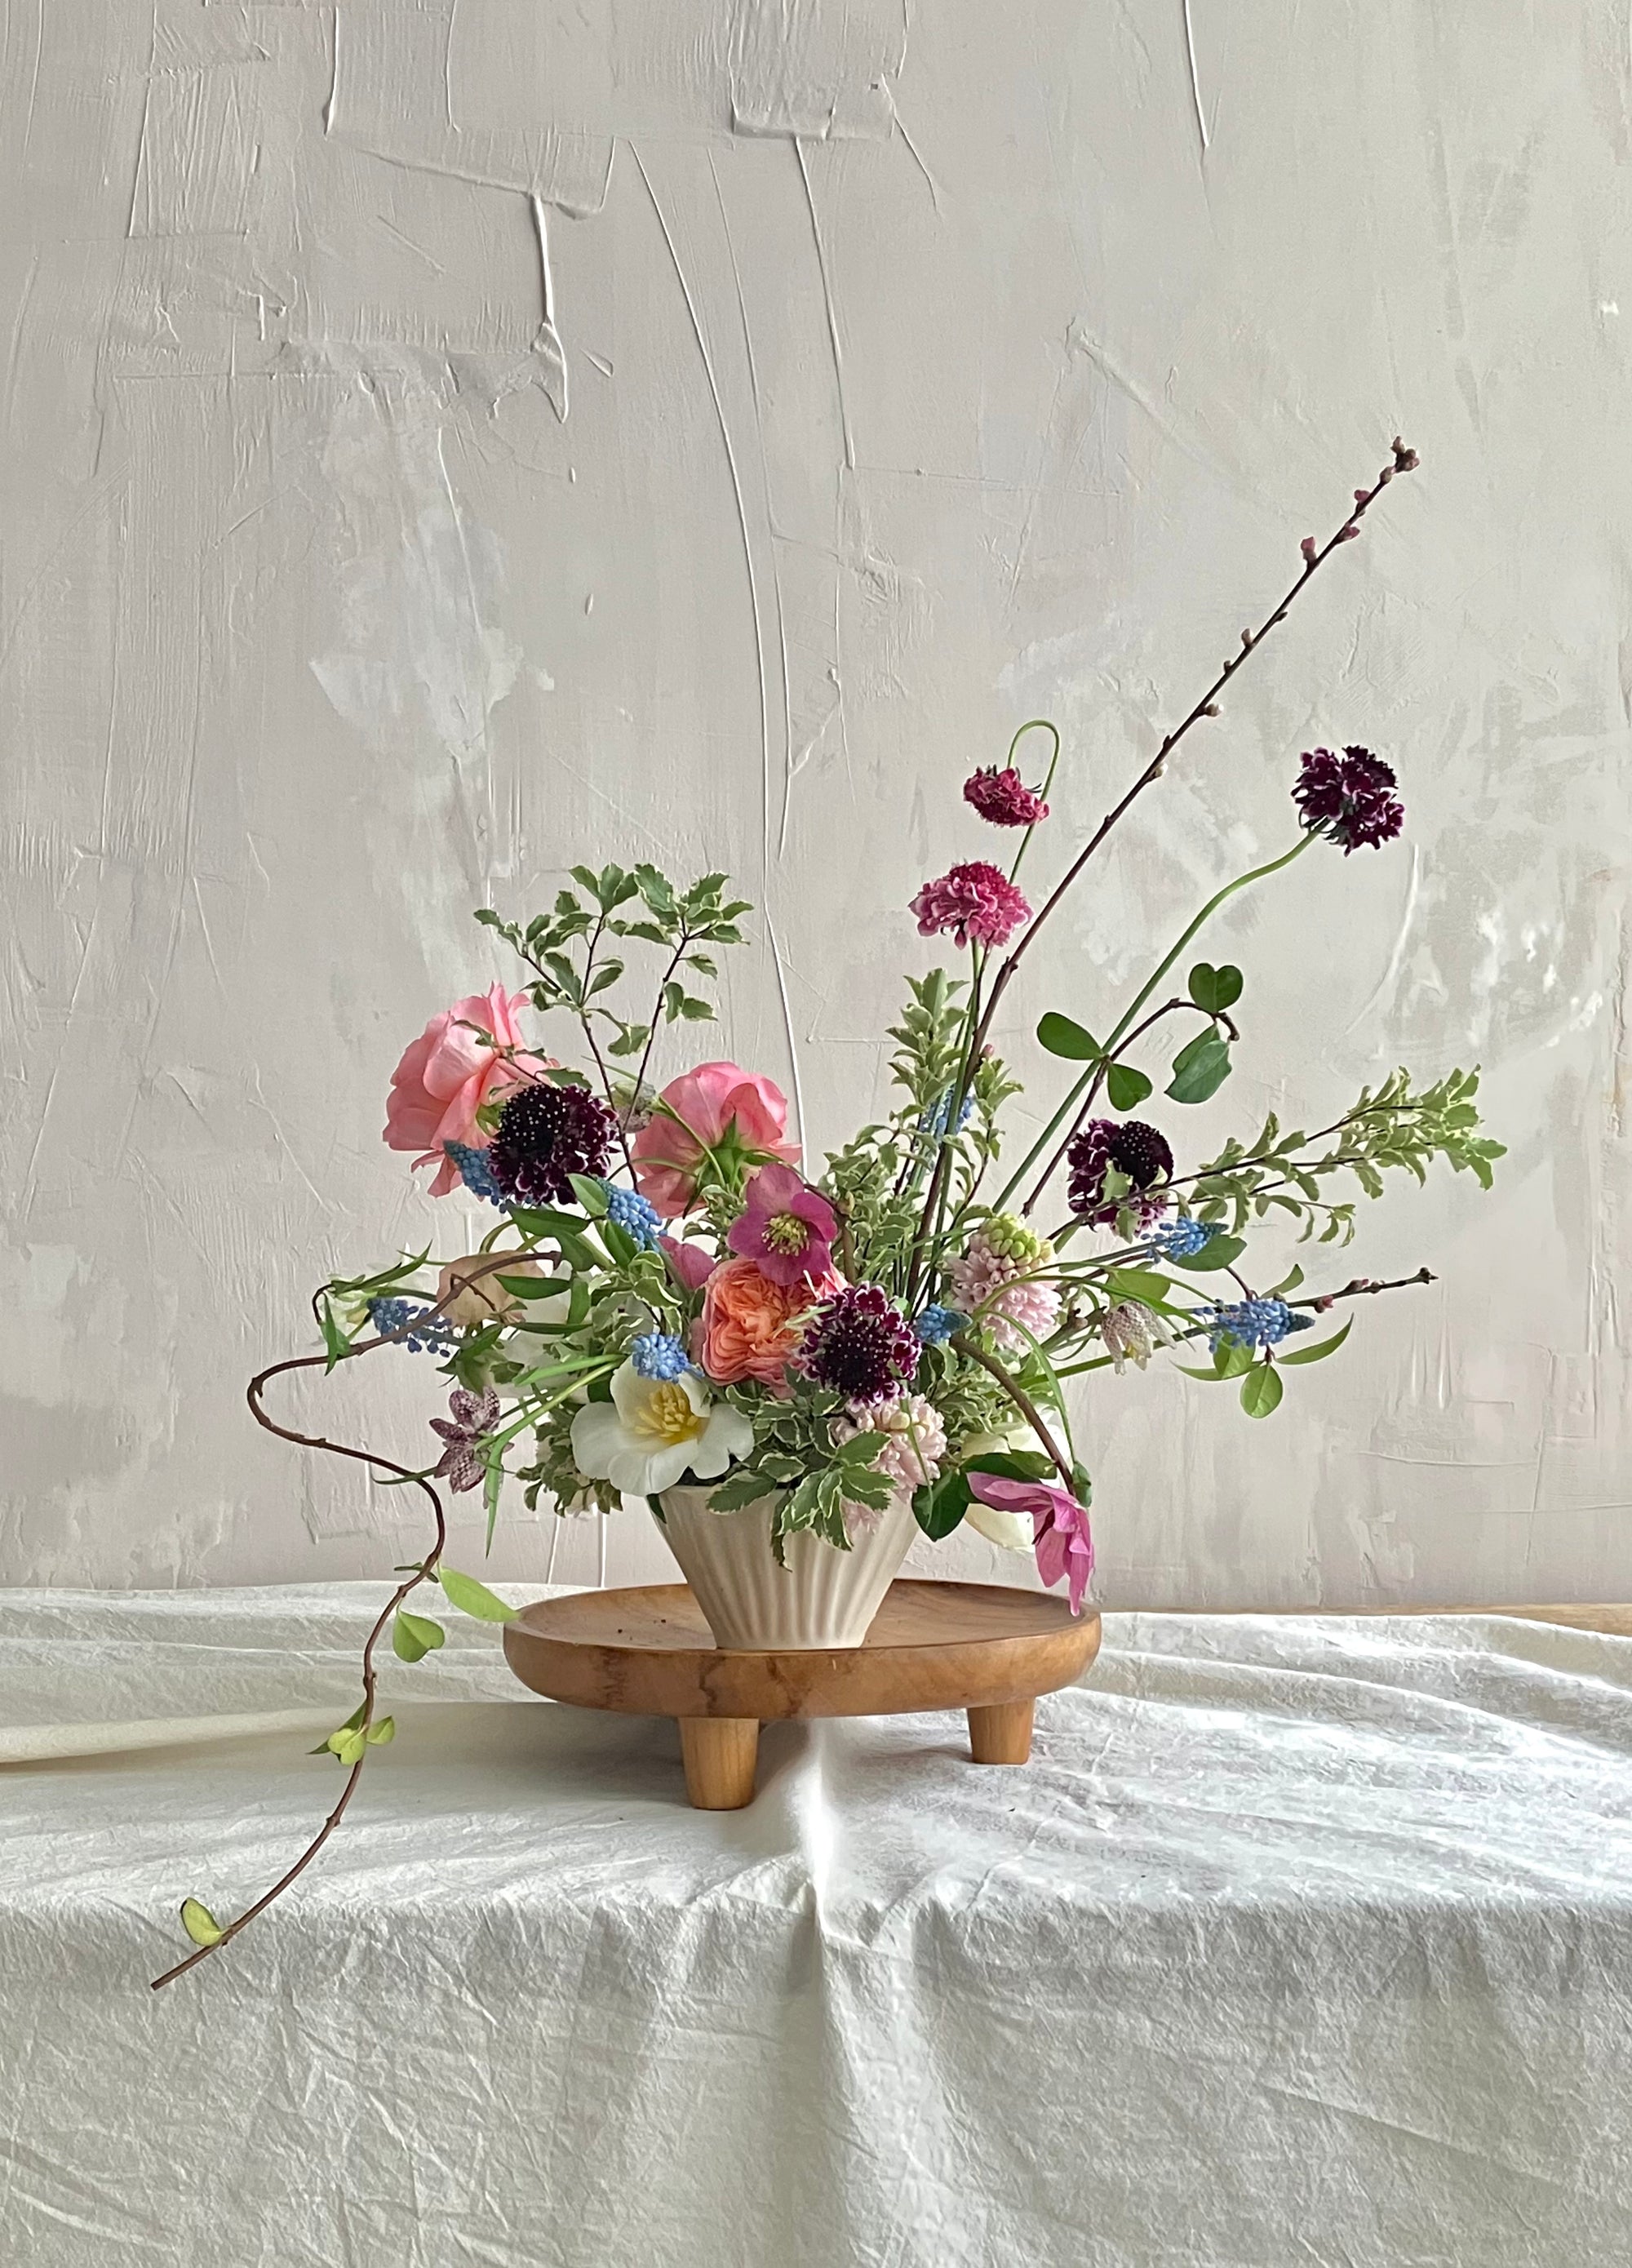 Floral arrangement workshop: Garden-style